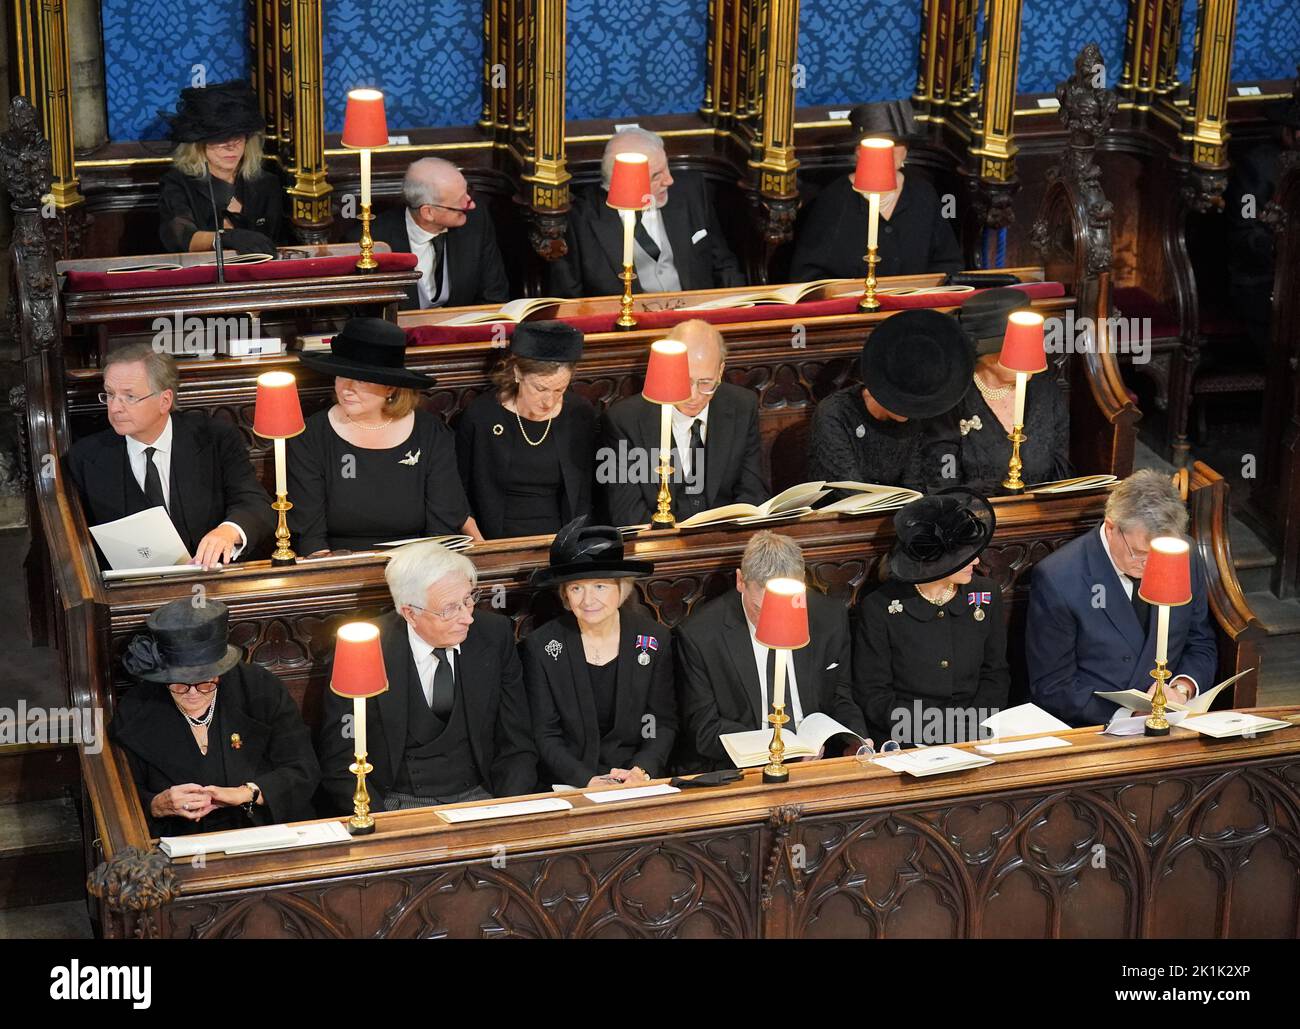 Ospiti seduti al funerale di Stato della Regina Elisabetta II, tenutosi all'Abbazia di Westminster, Londra. Data immagine: Lunedì 19 settembre 2022. Foto Stock